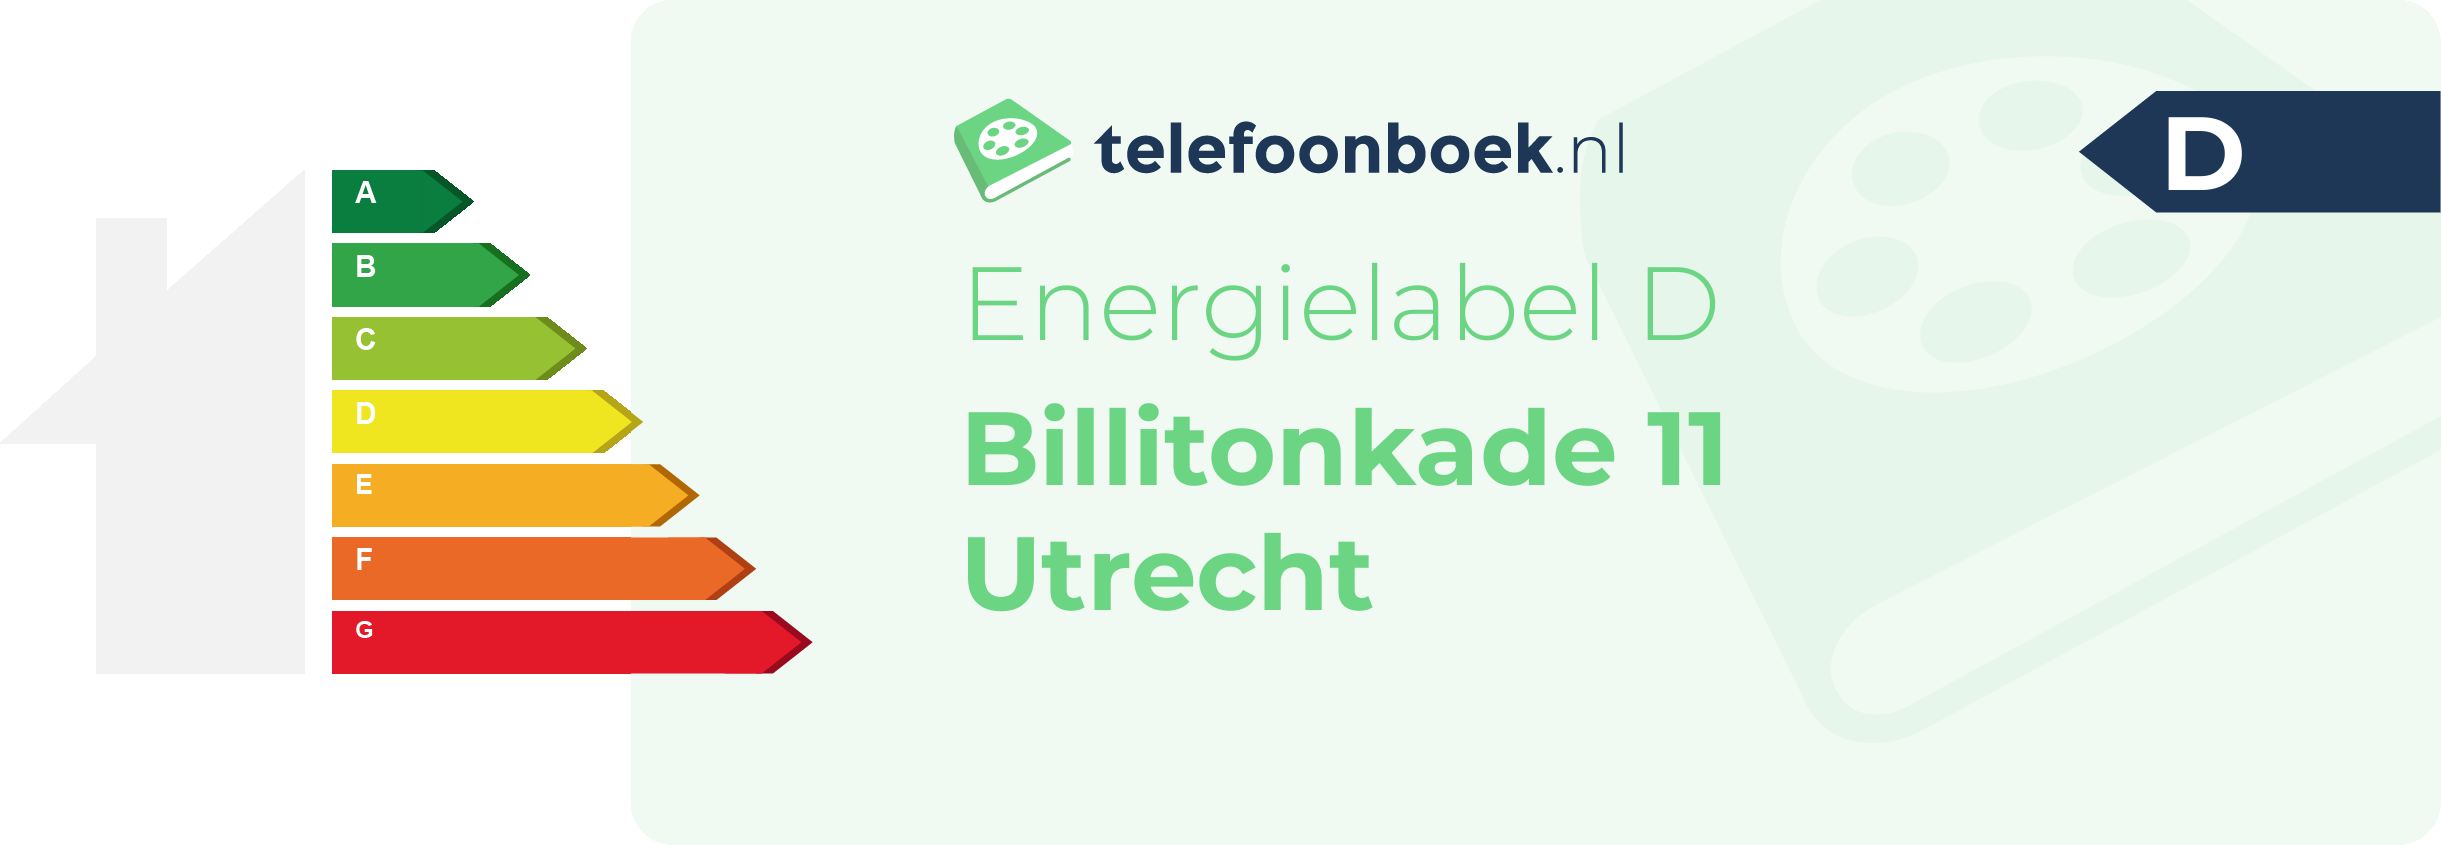 Energielabel Billitonkade 11 Utrecht